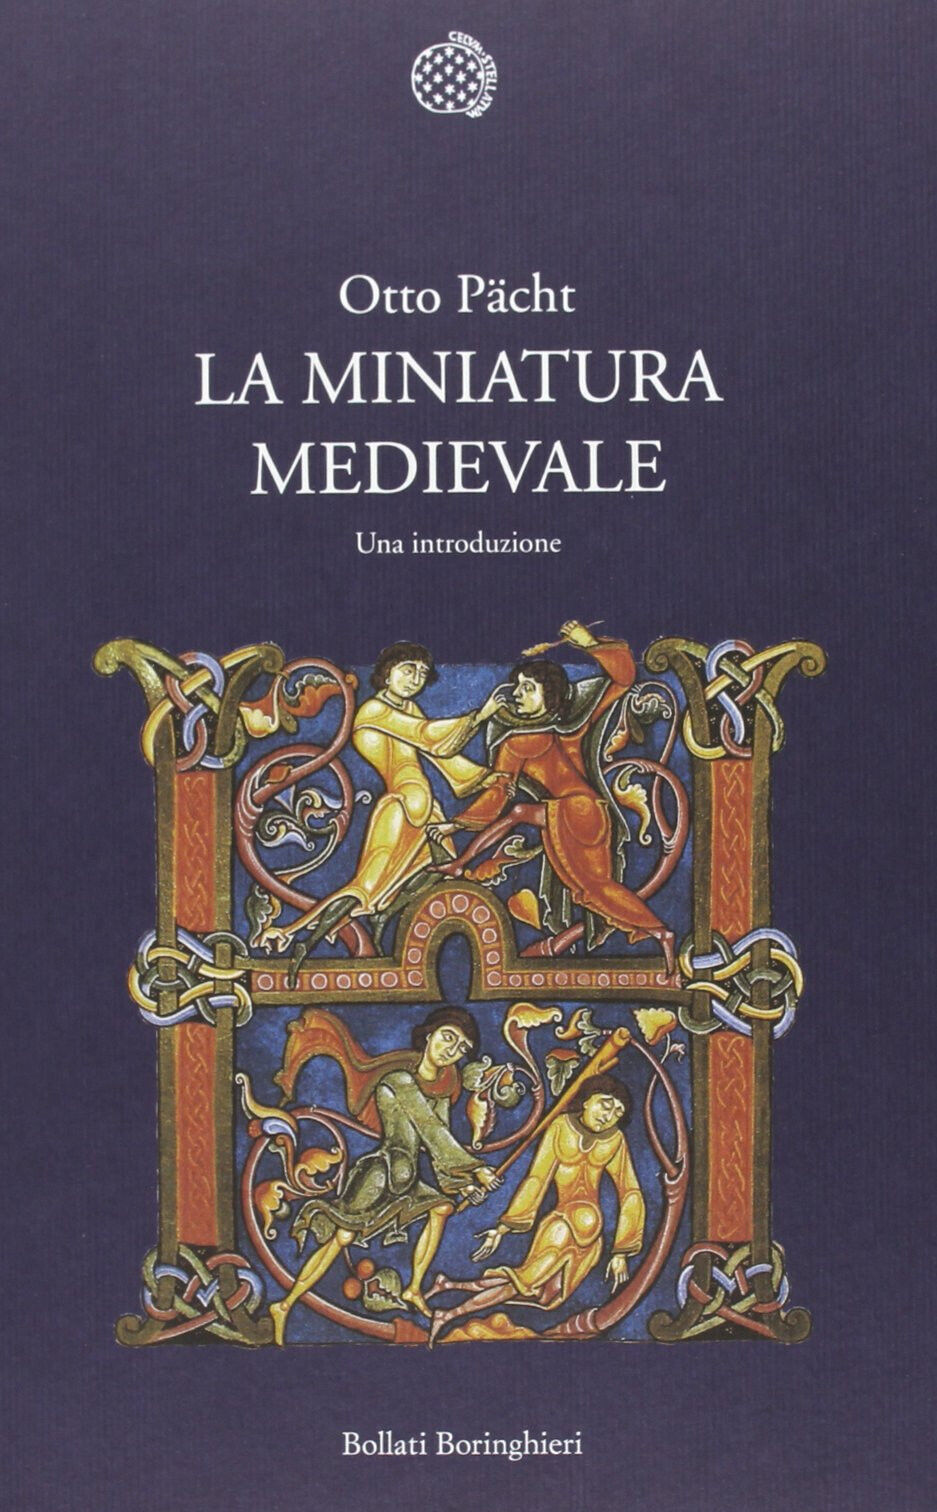 La miniatura medievale. Una introduzione - Otto P?cht - Bollati, 2013